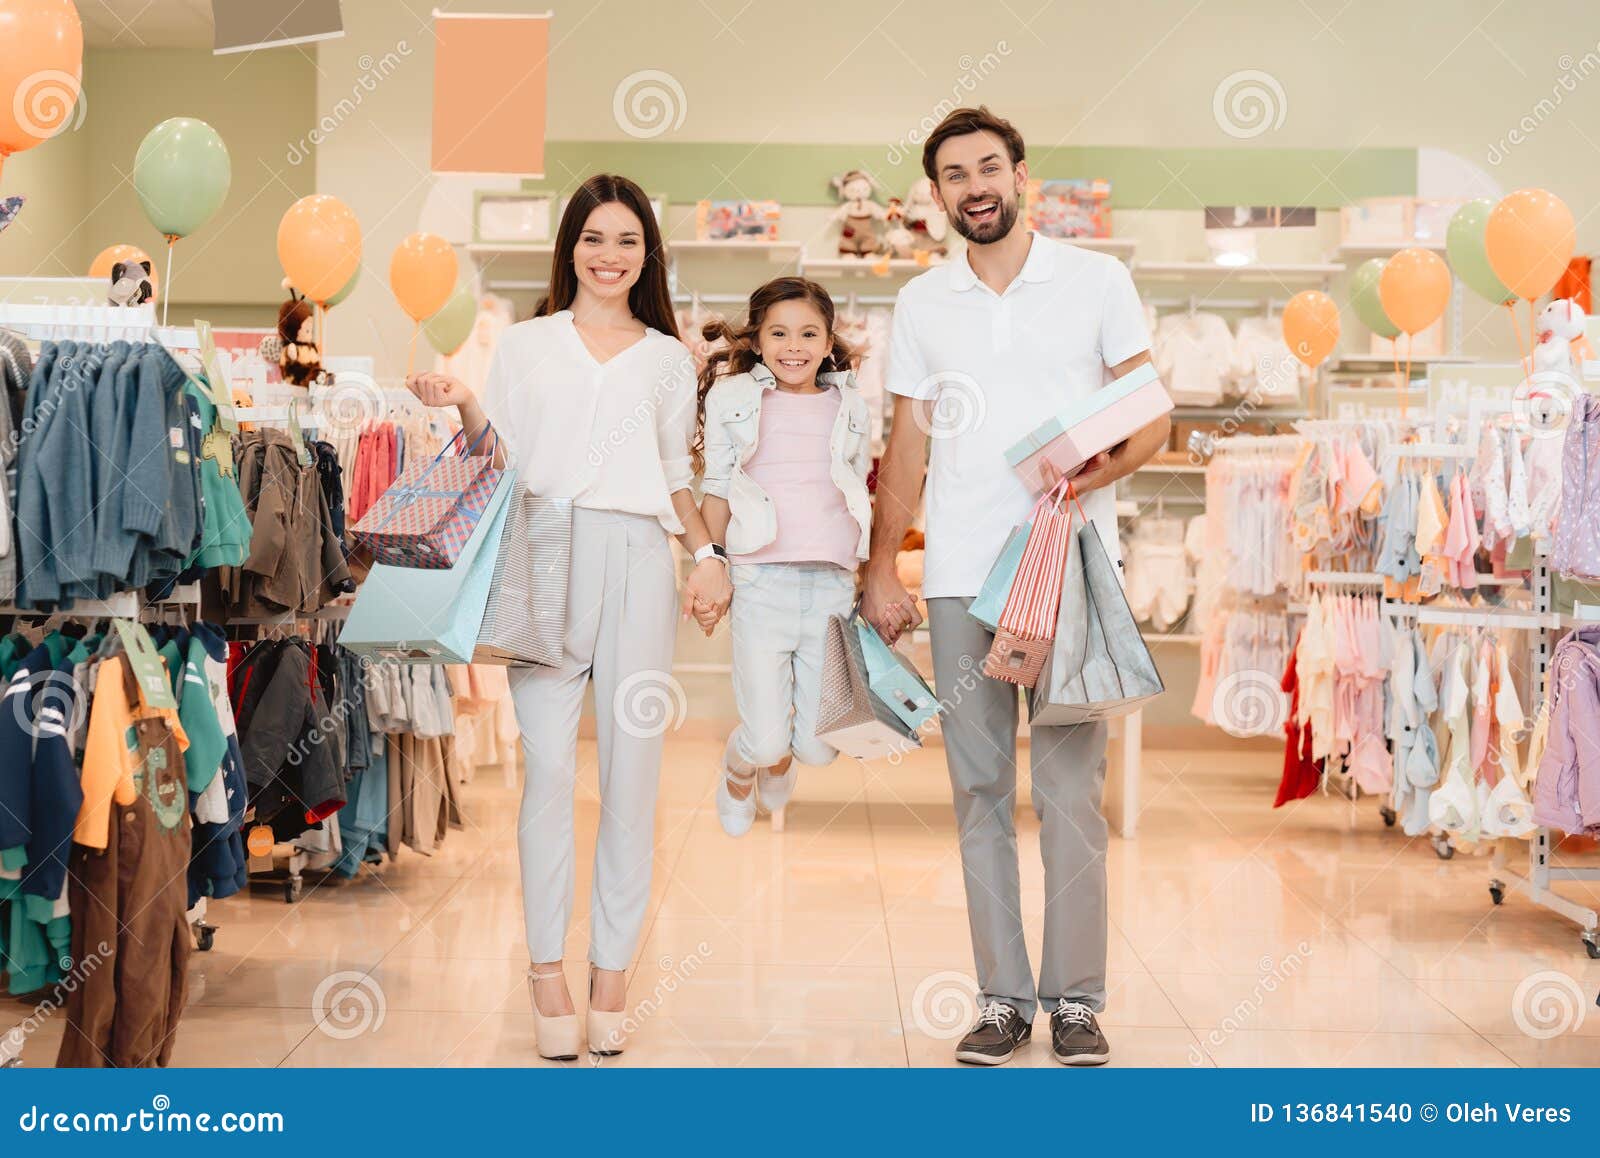 loja de roupa mae e filha